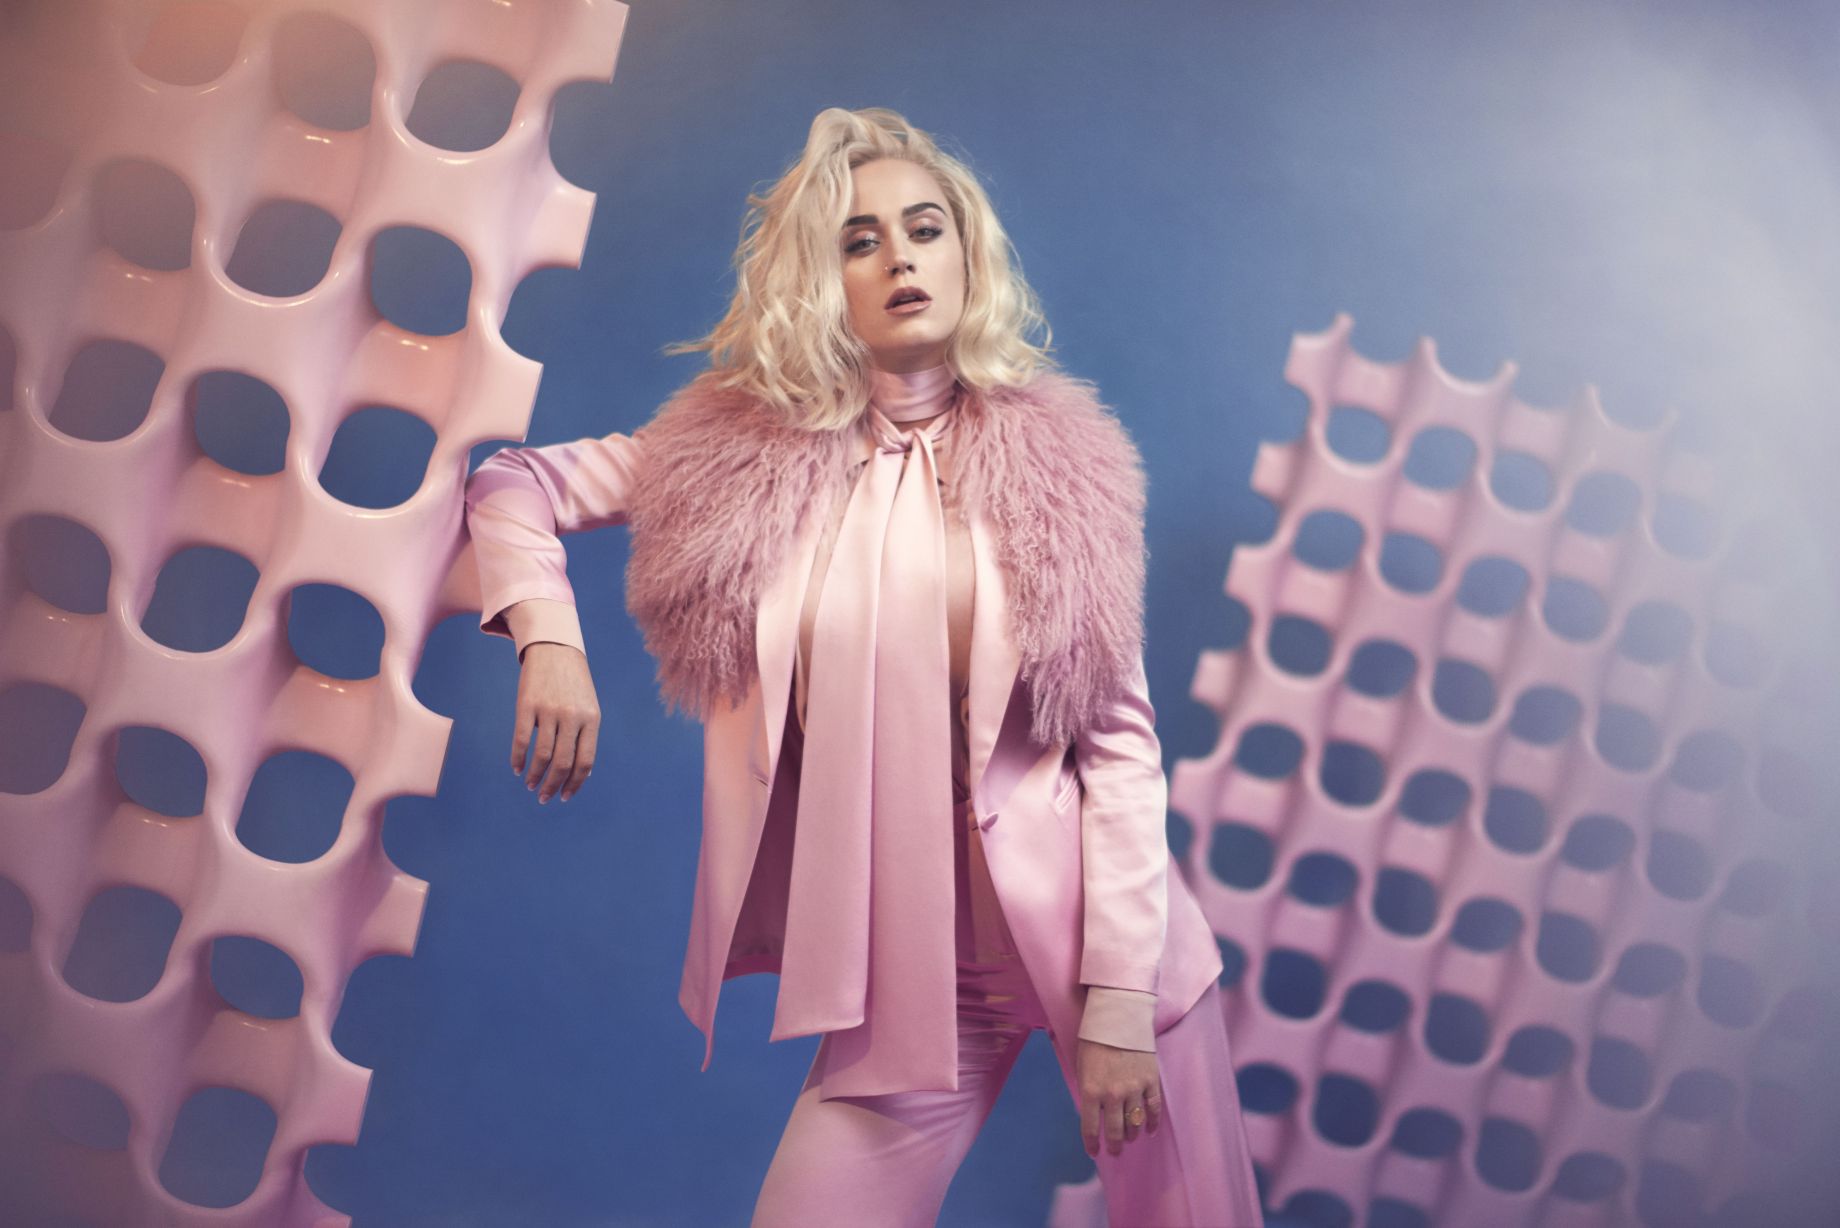 Chained To The Rhythm di Katy Perry vende al popolo una rivoluzione “elite-friendly”